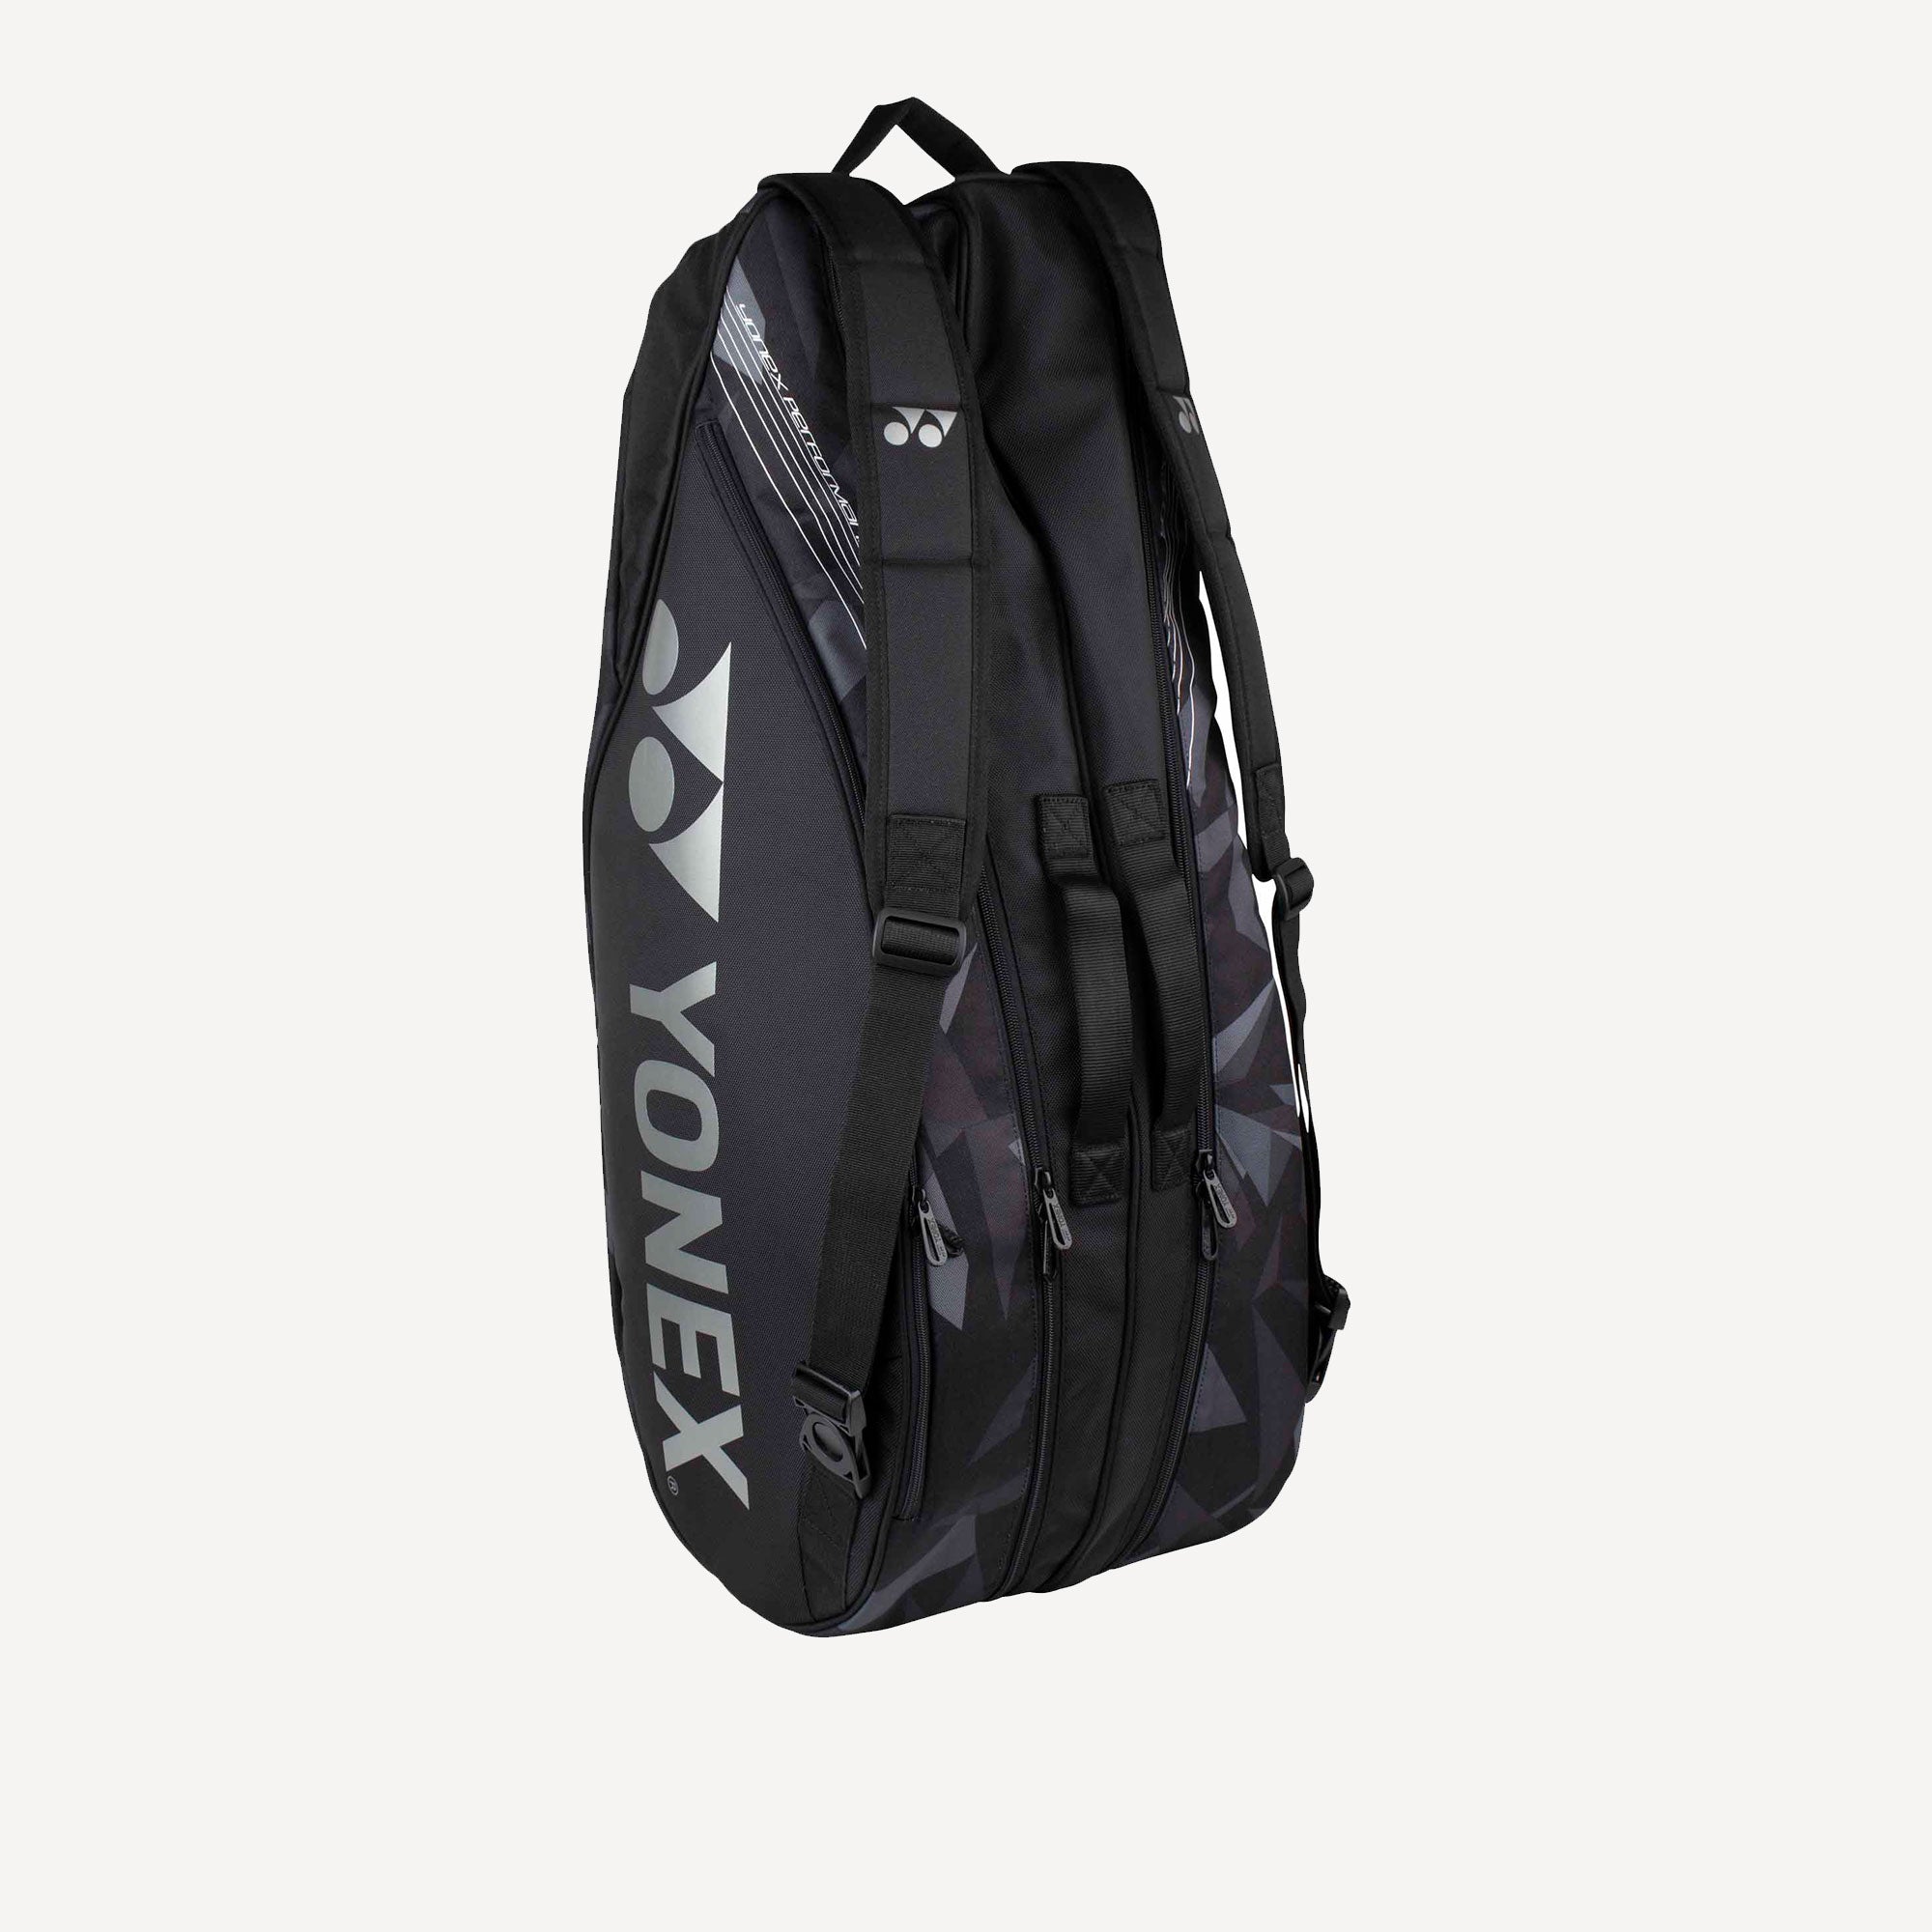 Yonex Pro 6R Tennis Bag Black (3)